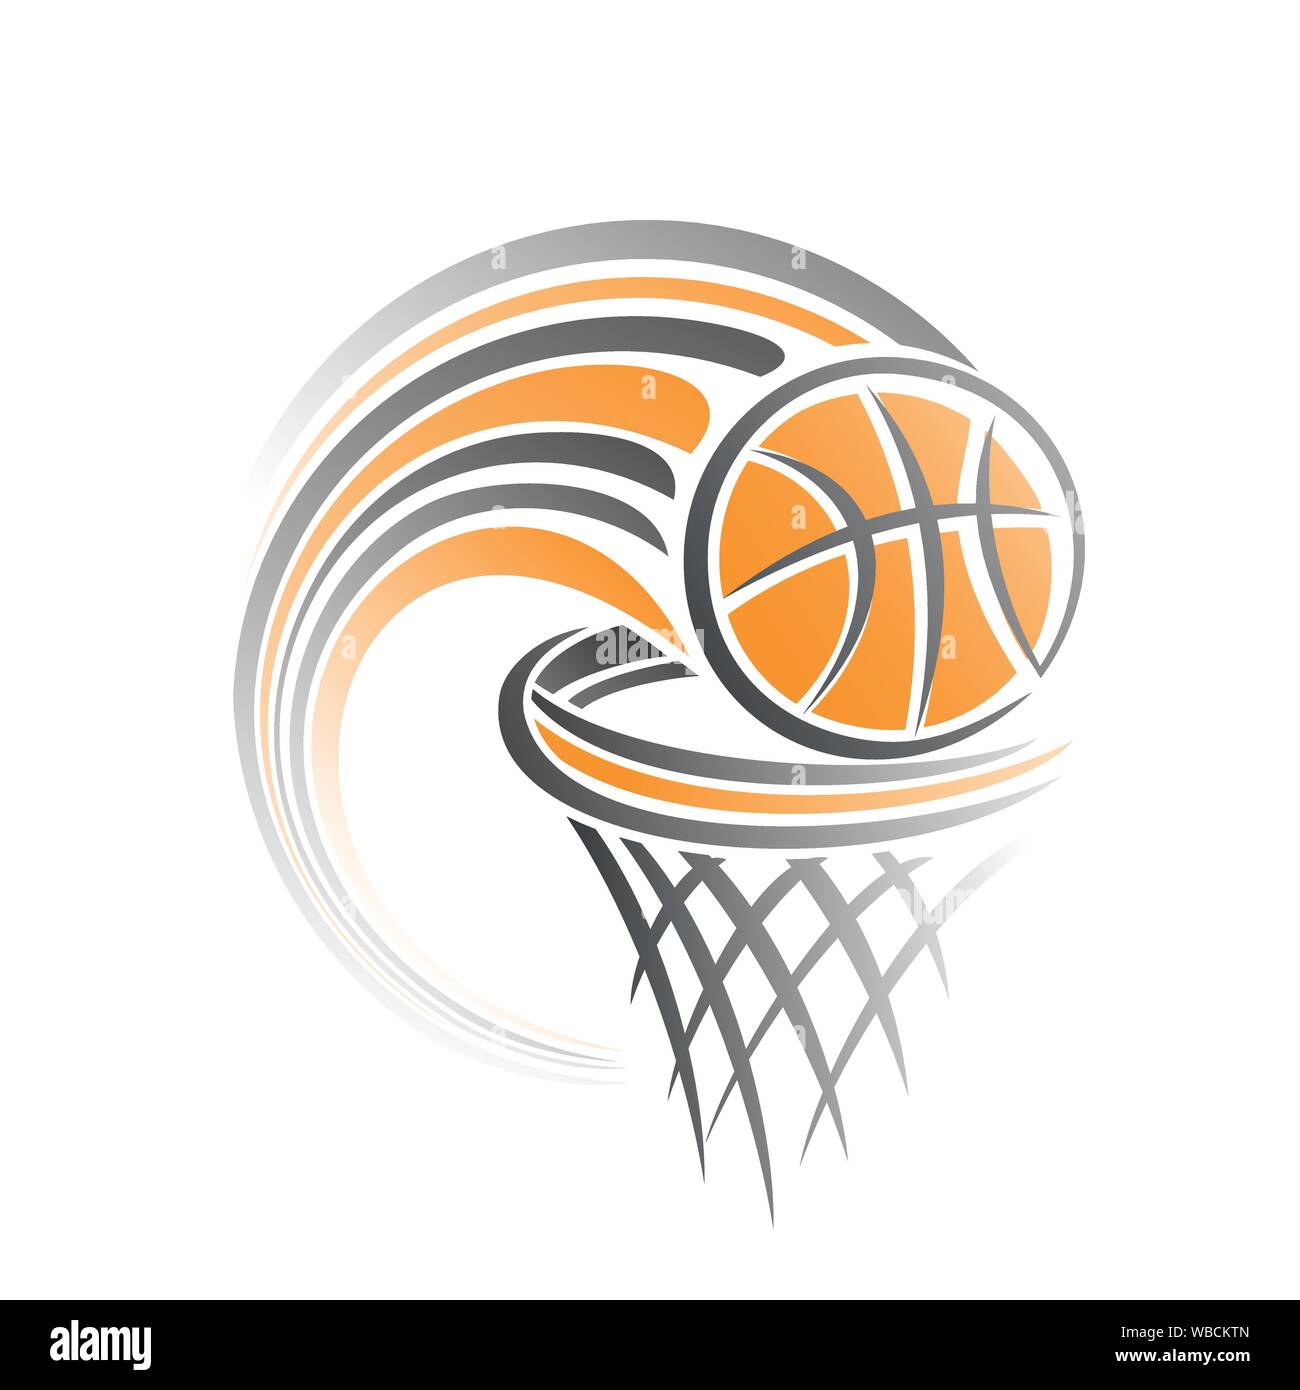 Abstract Vector illustration pour logo de basket-ball, composé de basket-ball  ball volant le long de la trajectoire exactement dans panier avec filet  Image Vectorielle Stock - Alamy